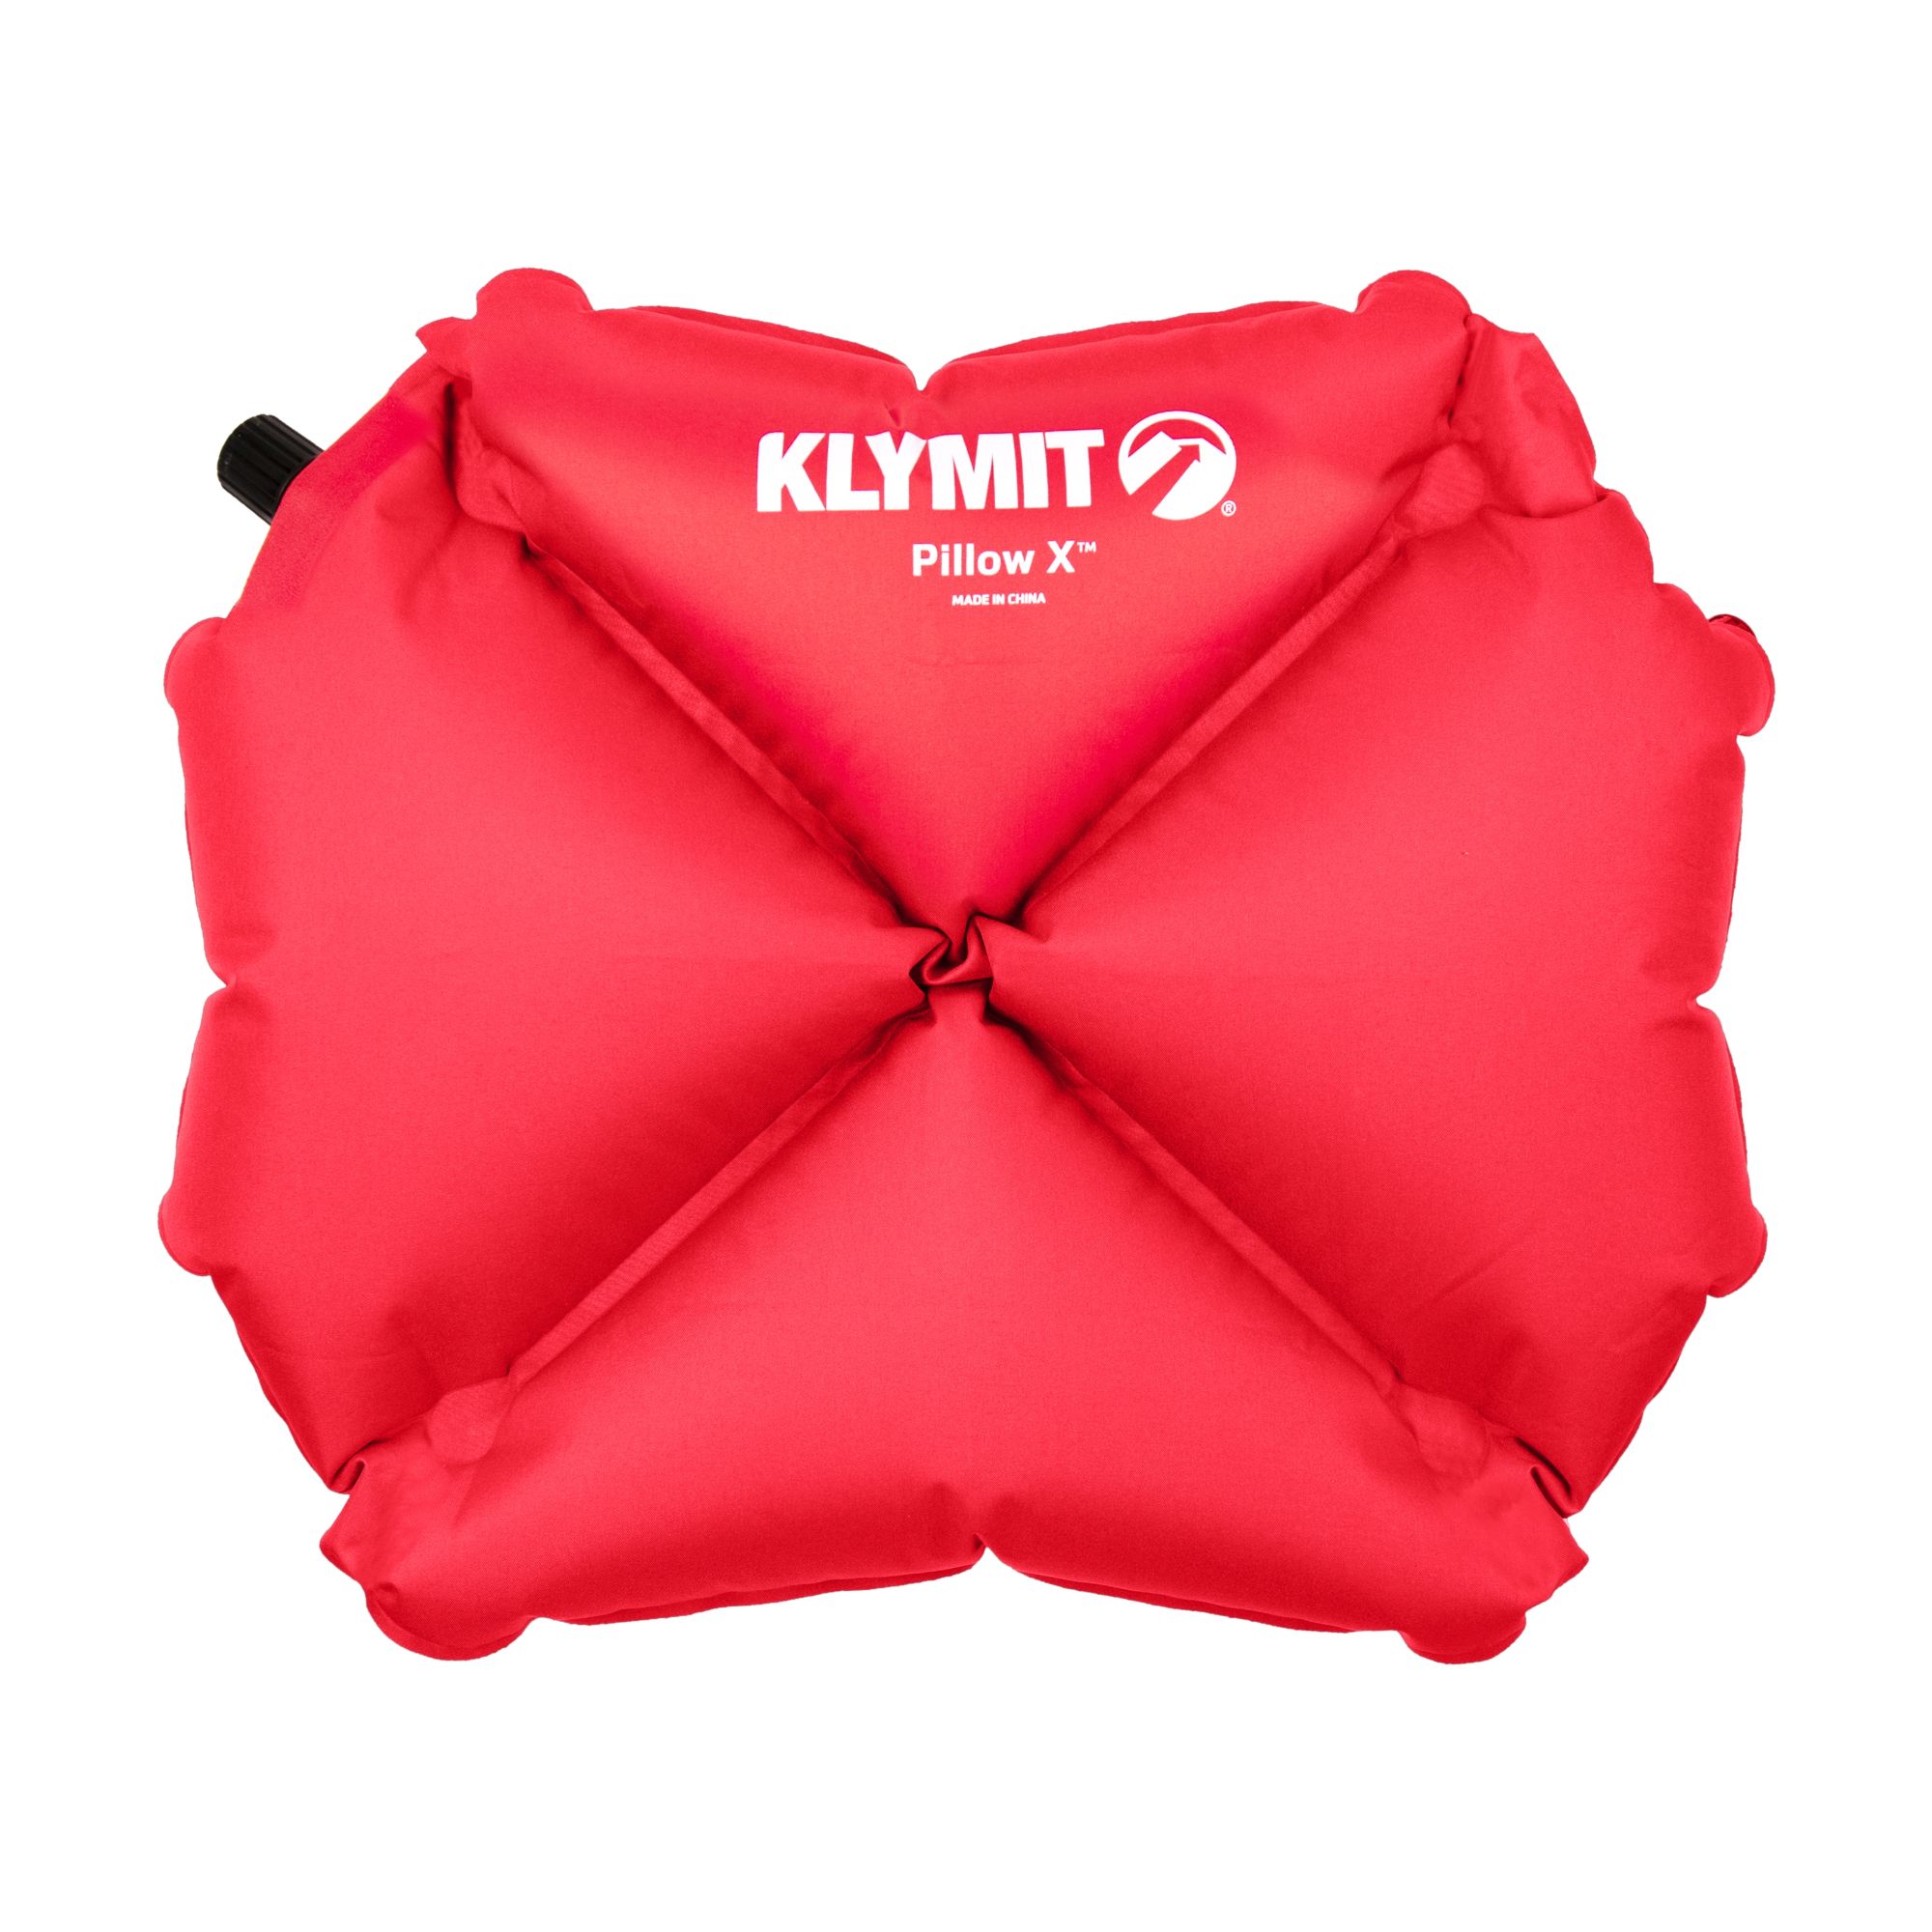 Klymit | Shop our Pillow X